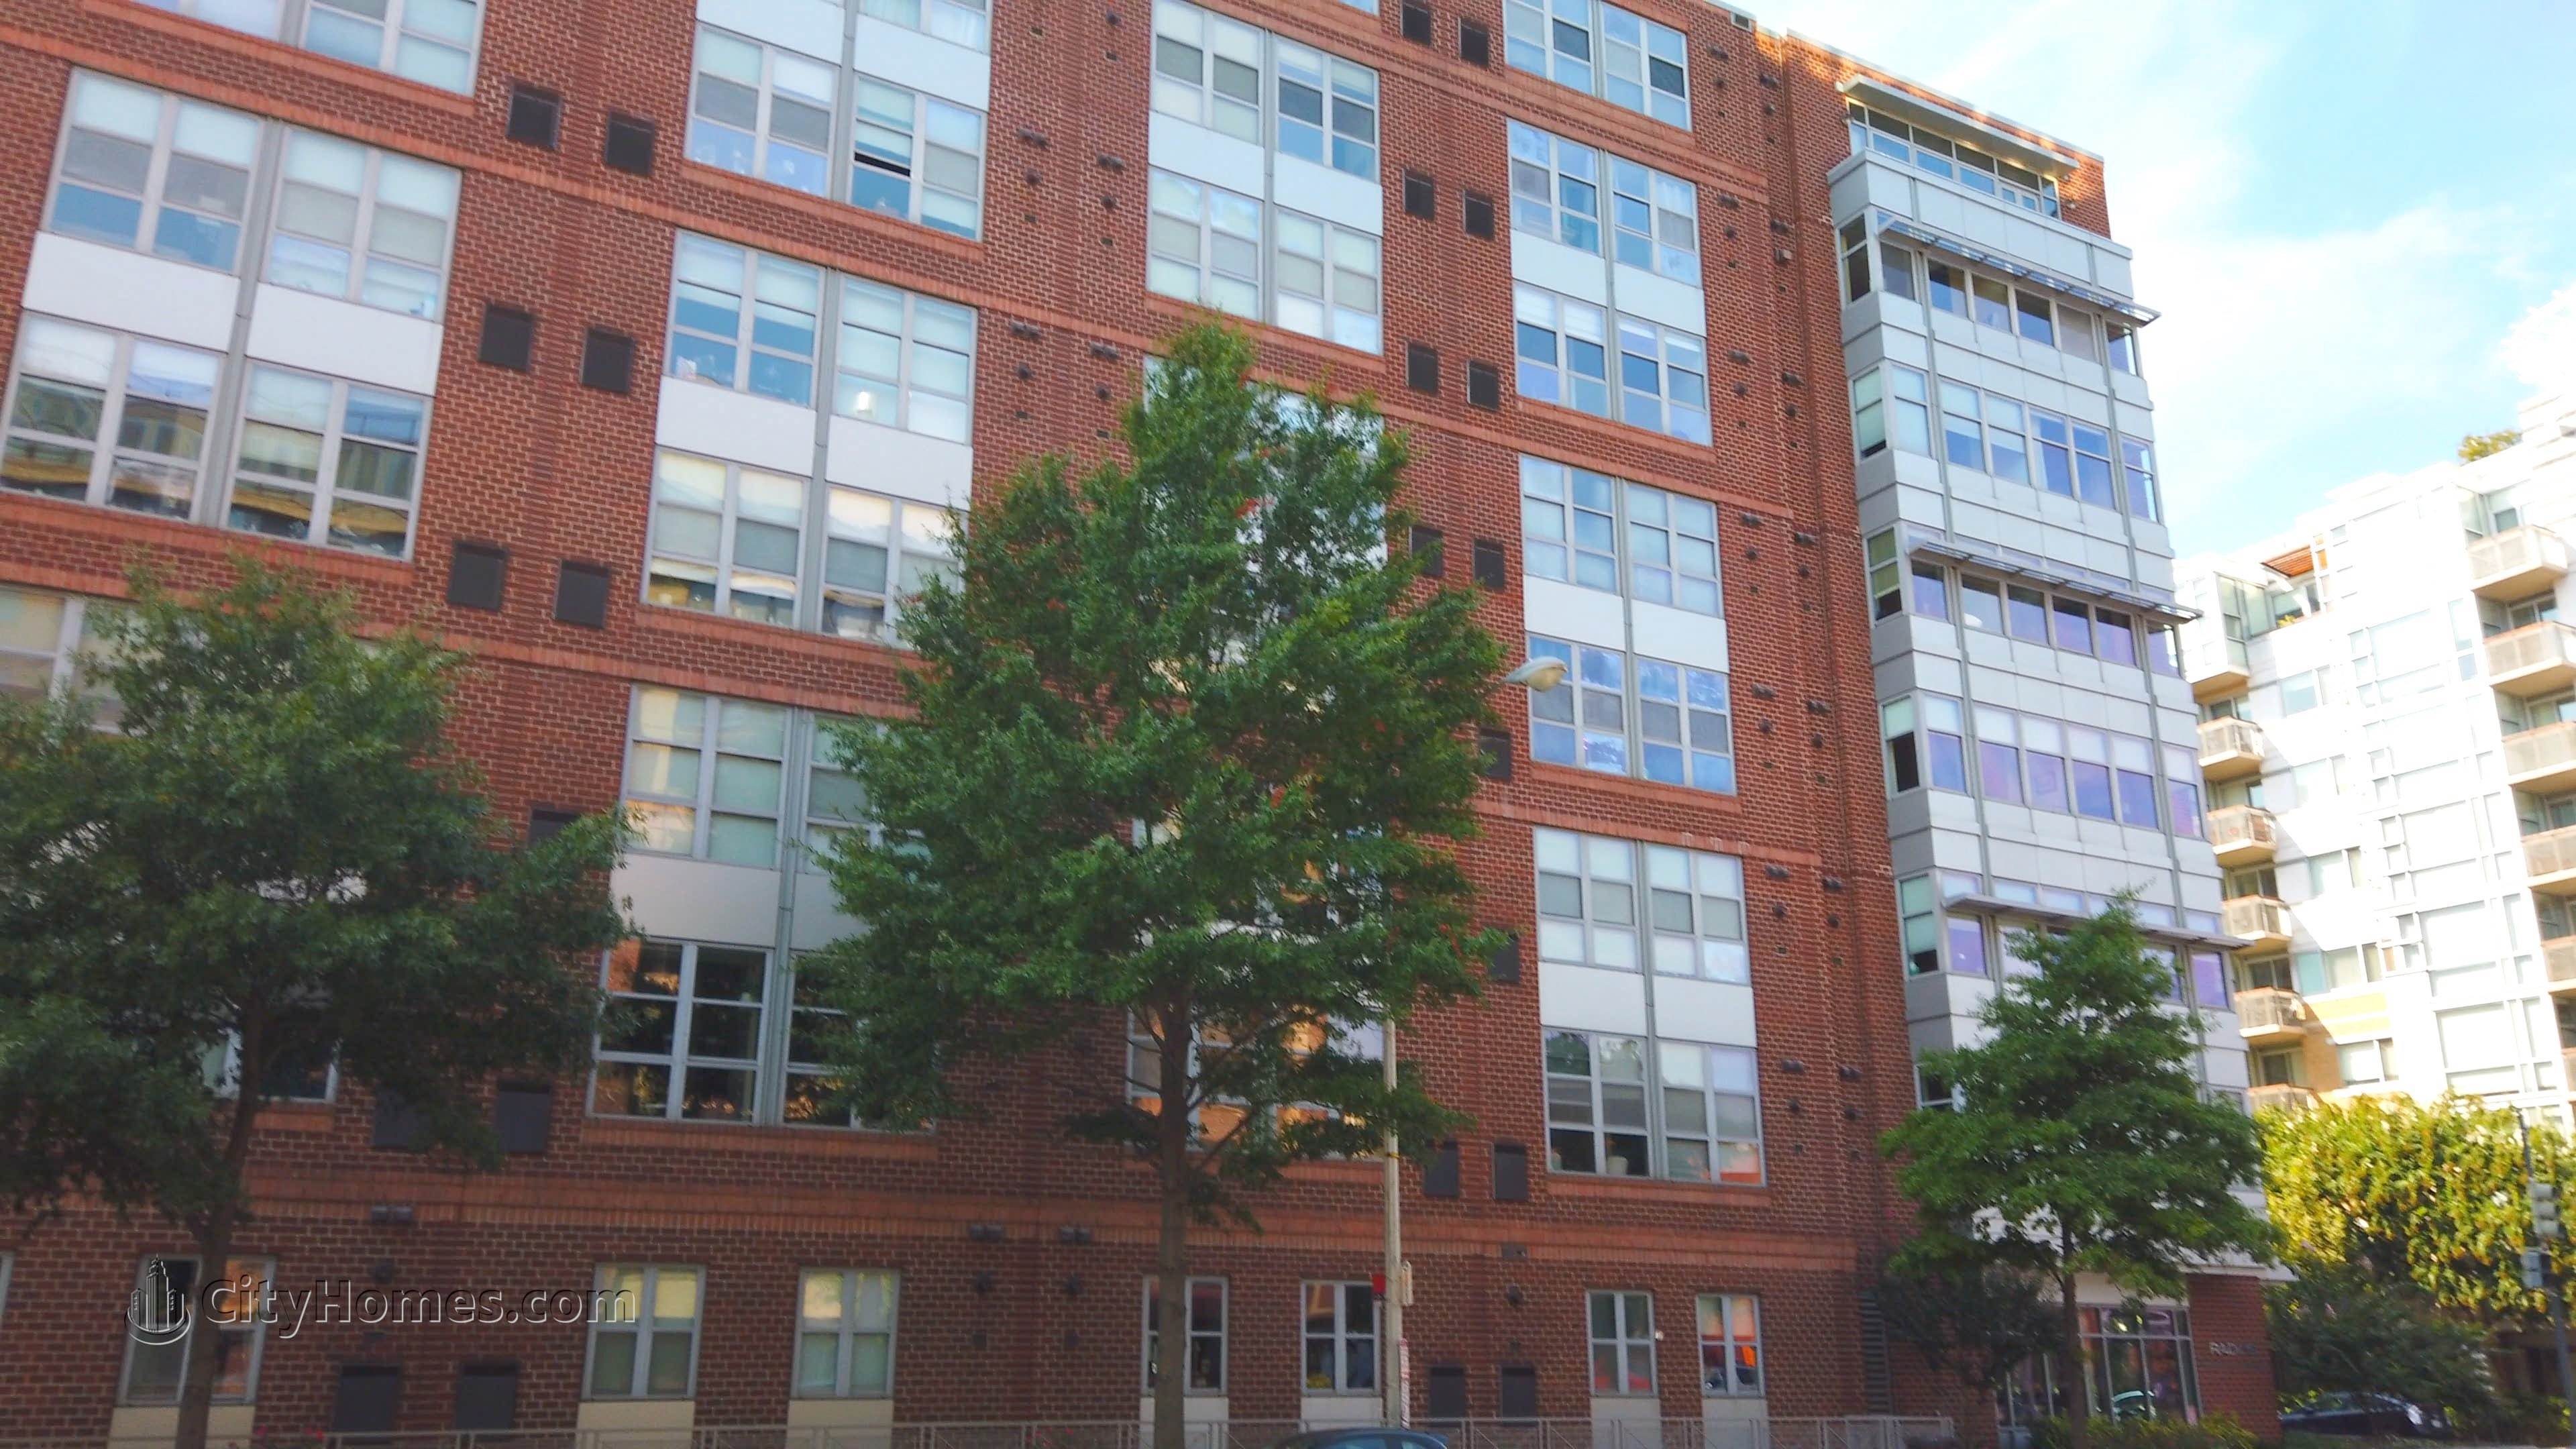 6. Radius Condos building at 1300 N St NW, Logan Circle, Washington, DC 20005